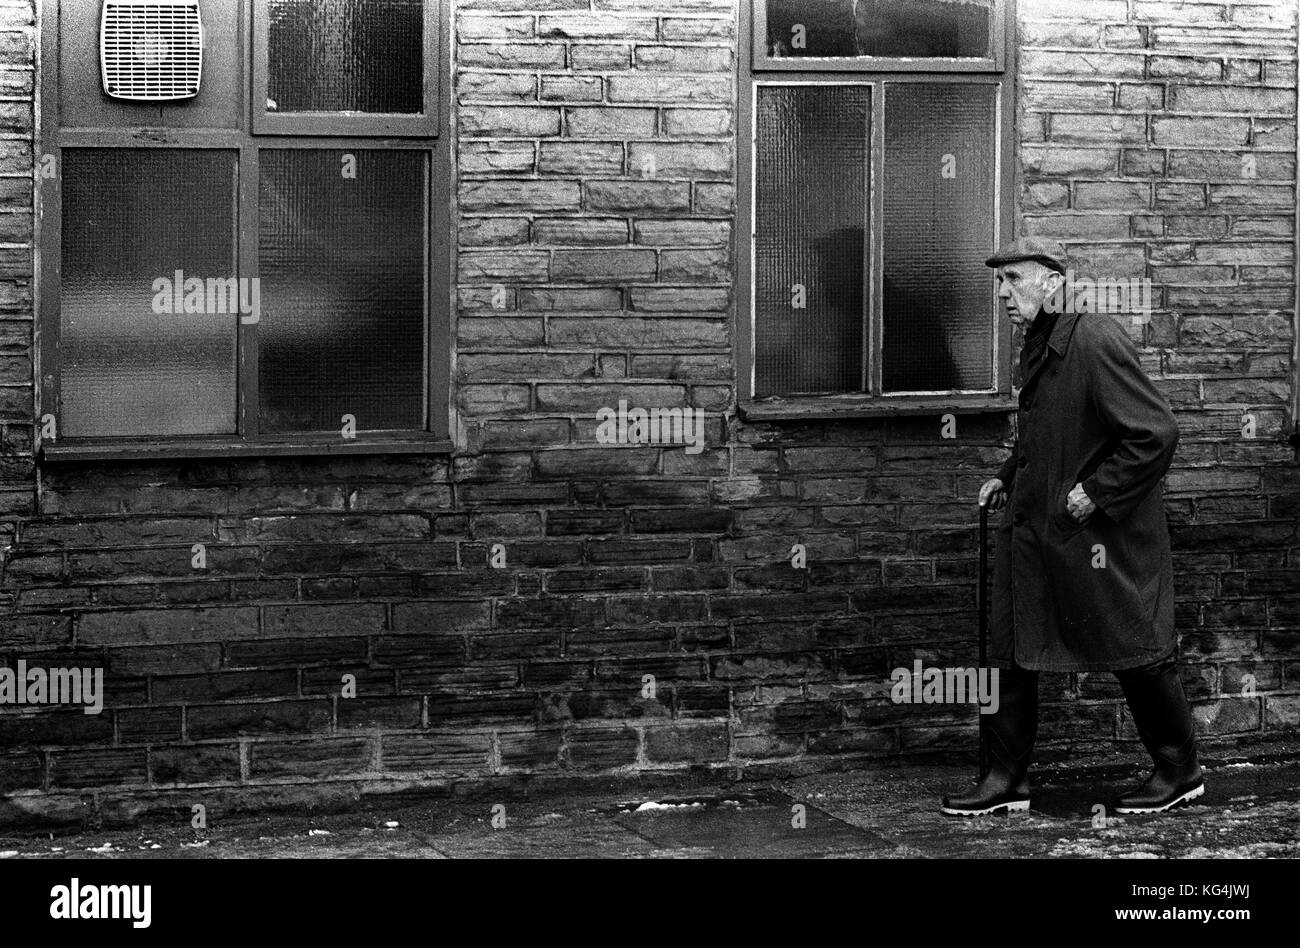 Shildon nella Contea di Durham 1986s. Una volta che una città conosciuta come 'la culla delle ferrovie". Nel 1984 il railworks collaped e lasciato una comunità di disoccupazione e il declino economico per il prossimo decennio. Foto Stock